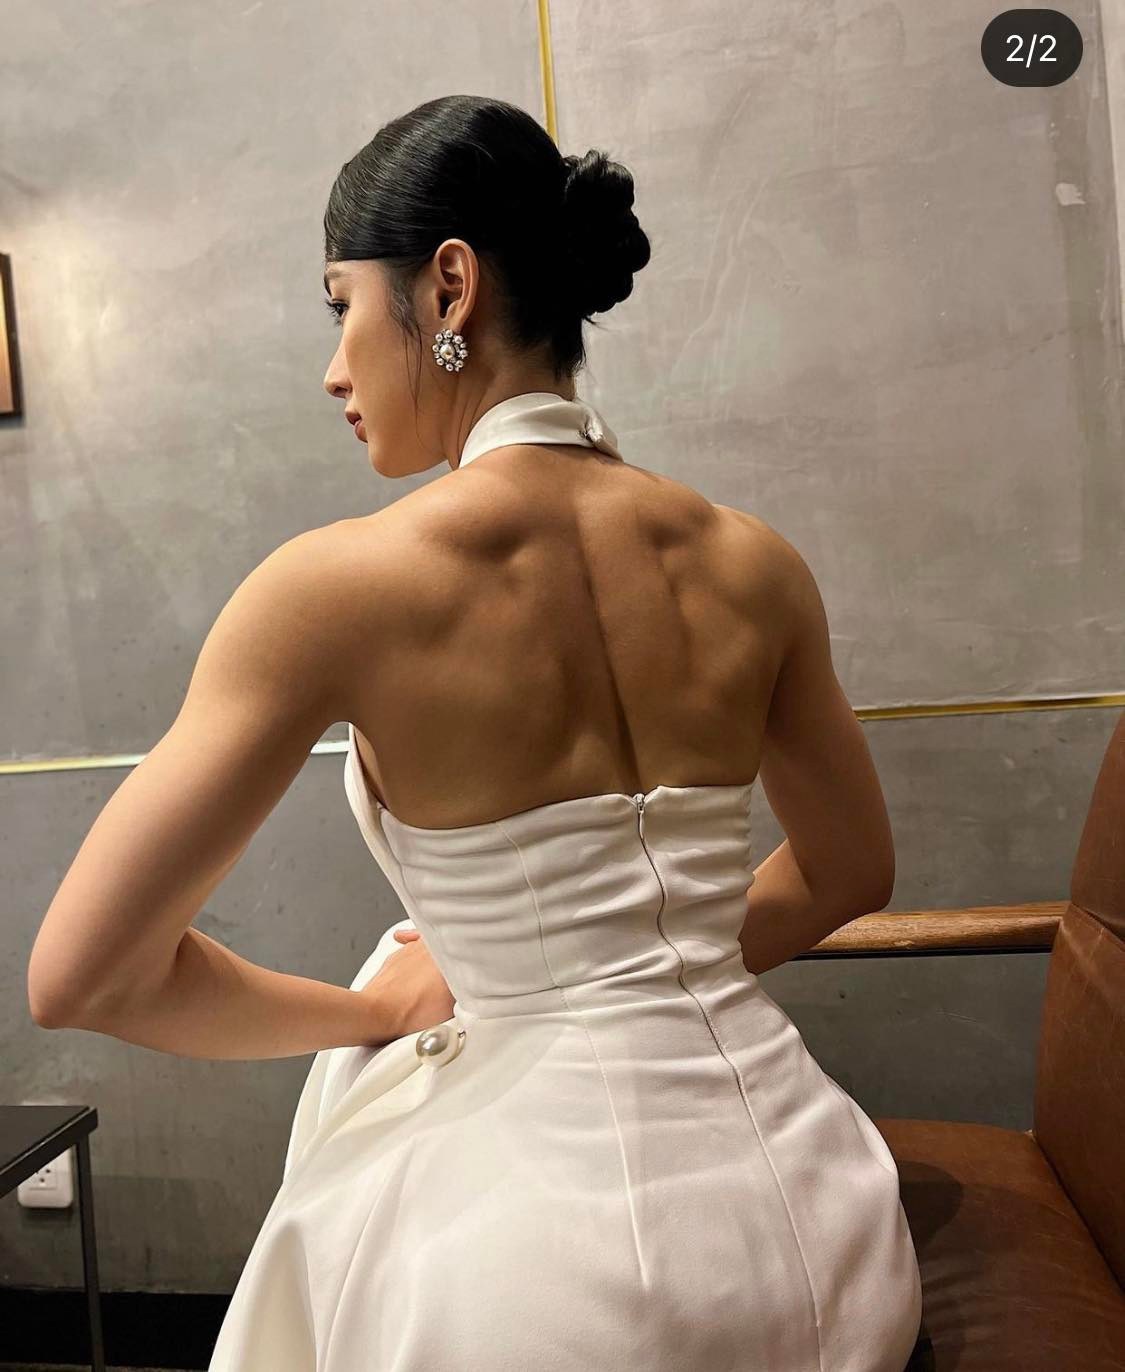 Angela Phương Trinh diện váy nữ tính đối lập với hình ảnh cơ bắp cuồn cuộn, bị nhận xét làm mất đi vẻ đẹp nữ tính vốn có.